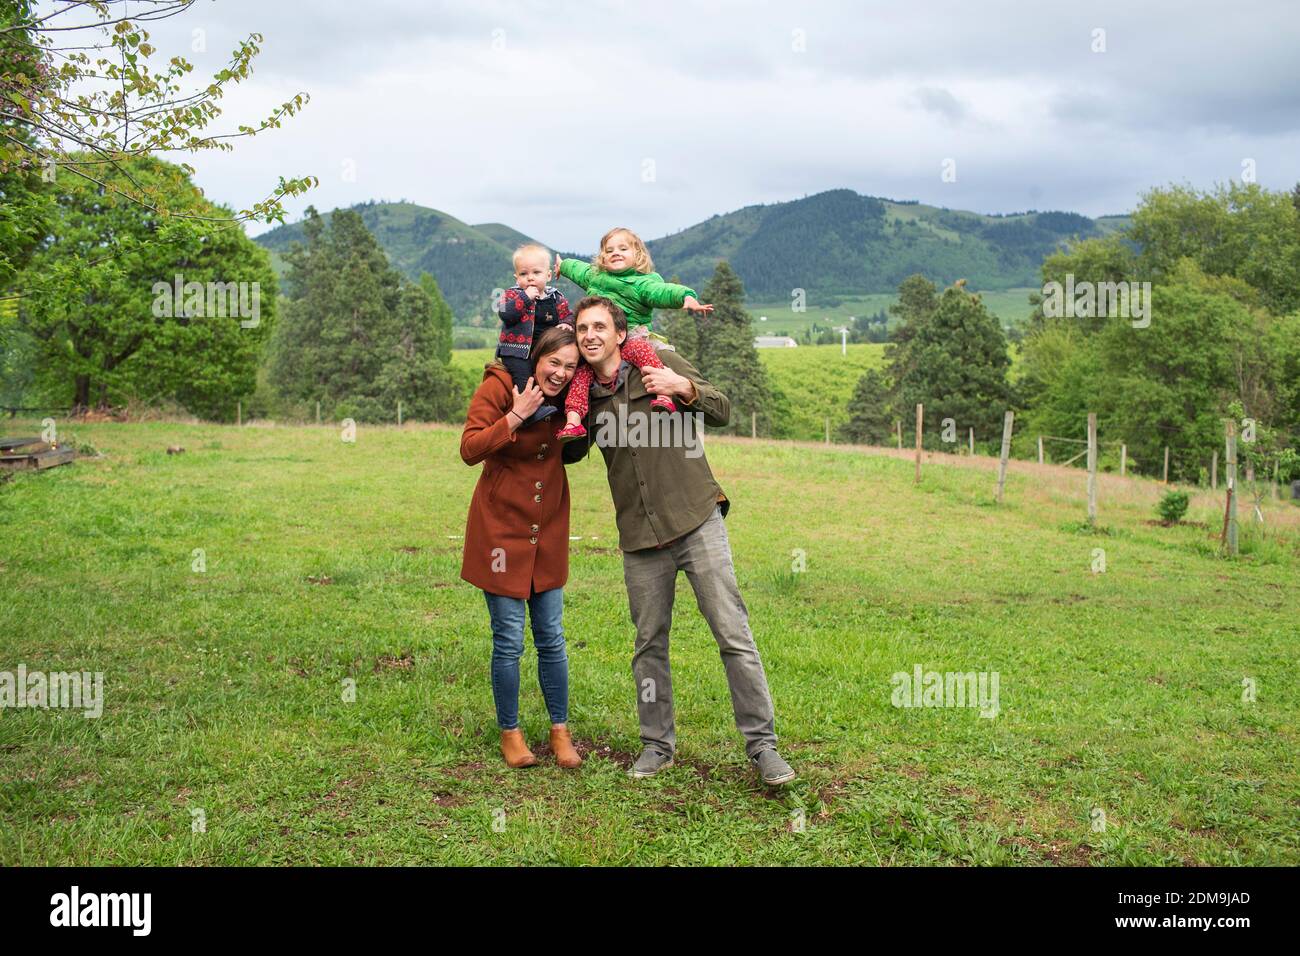 Un ritratto di una famiglia di 4 persone nel cortile Di una casa in America rurale Foto Stock